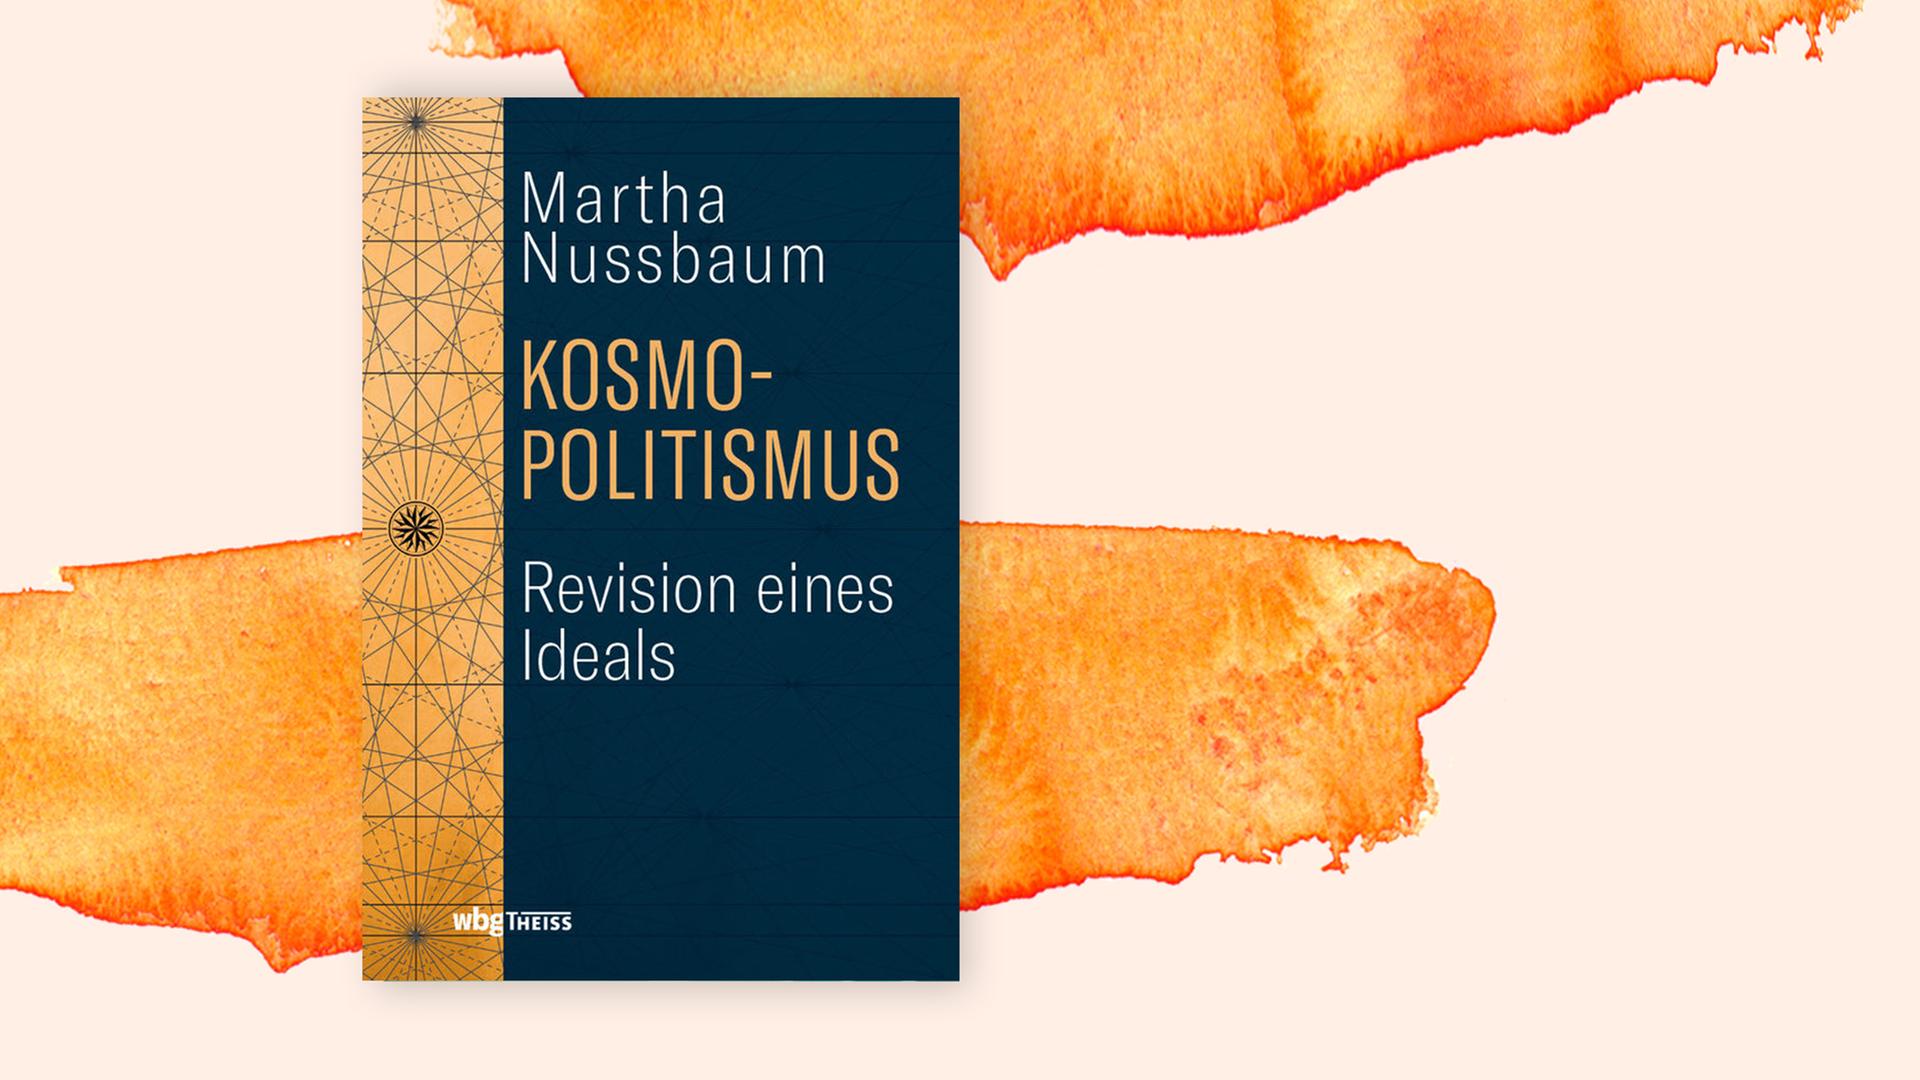 Cover zu Nussbaums Bcuh "Kosmopolitsmus" auf organefarbenem Aquarellhintergrund.